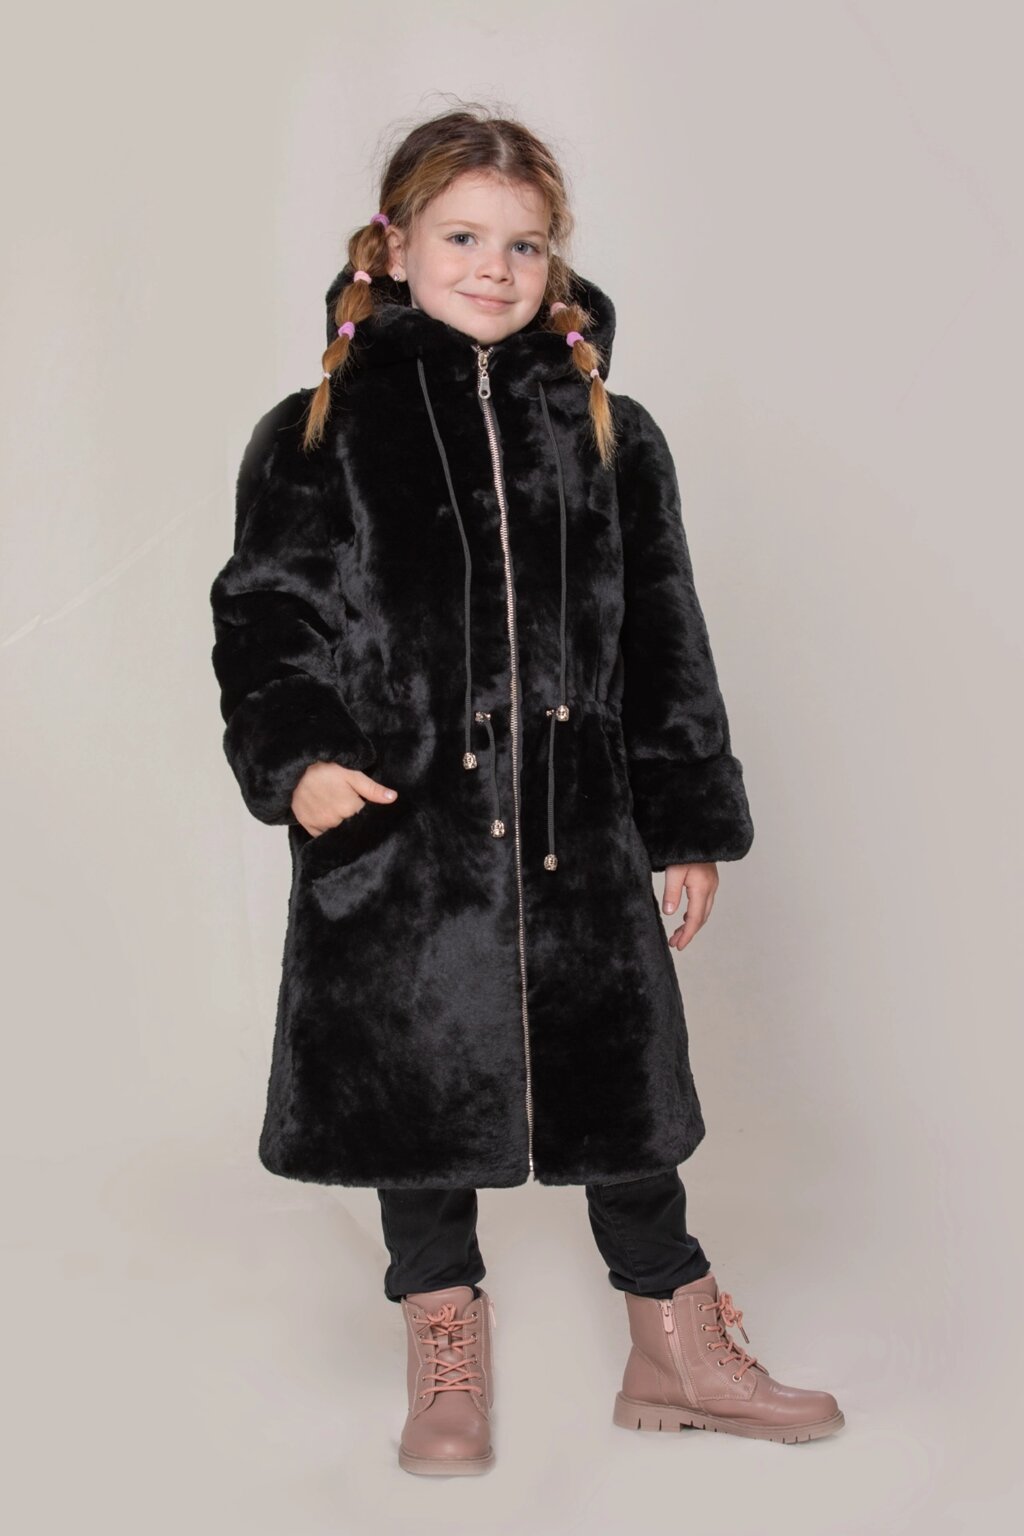 Детская шуба из мутона "Моника" черная МЦ-086 "Зимняя принцесса" от компании Детское ателье "Зимняя принцесса" - фото 1